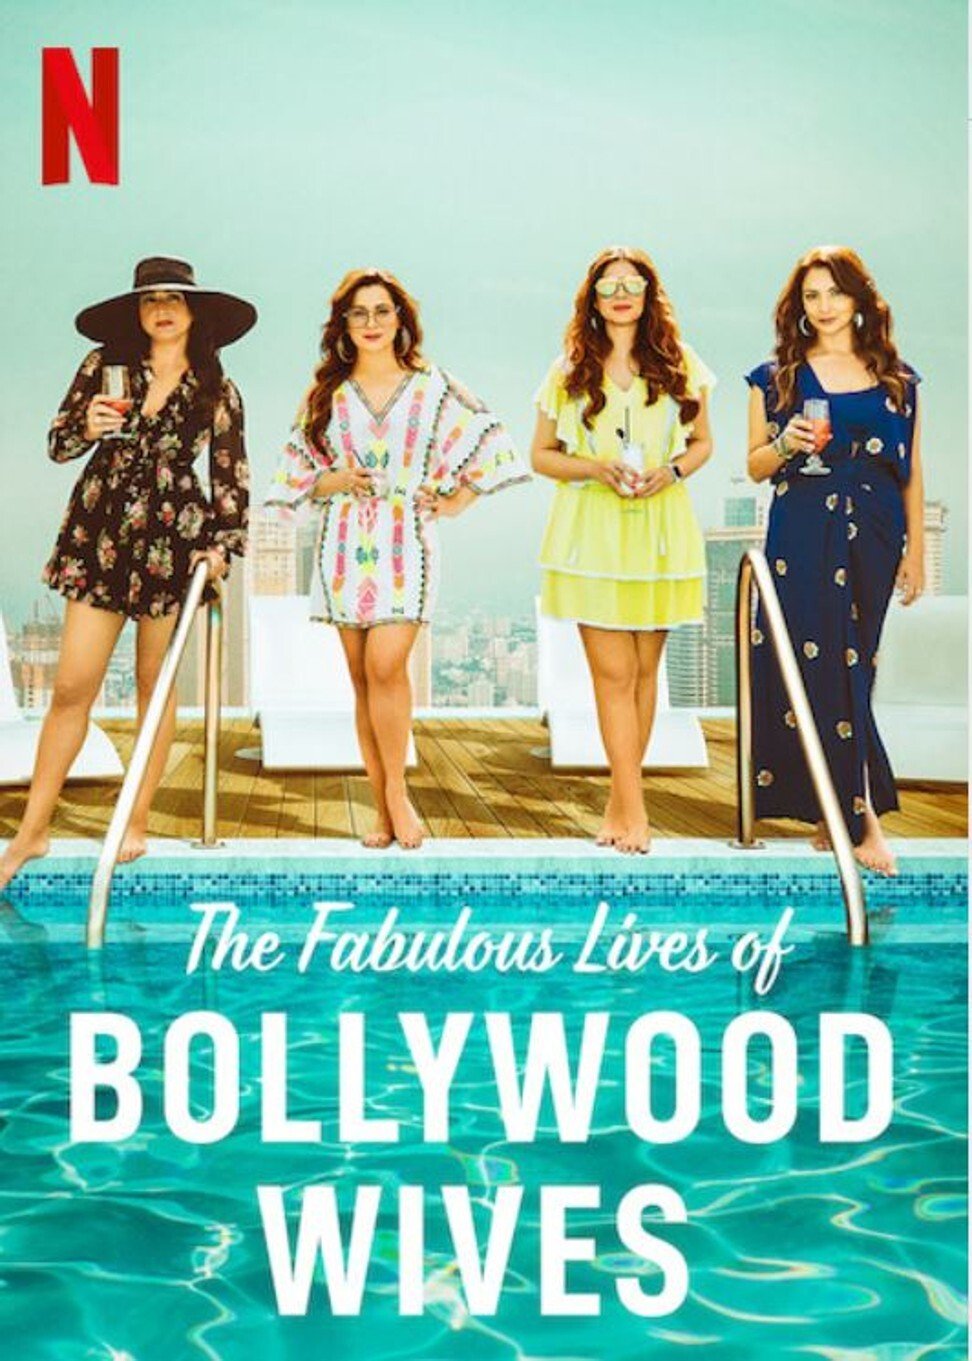 ดูหนังออนไลน์ Fabulous Lives of Bollywood Wives Season 1 Ep01 แฟบูลูส ไลฟ์ ออฟ บอลลีวู๊ด ไวส์ท ปี1 ตอนที่1